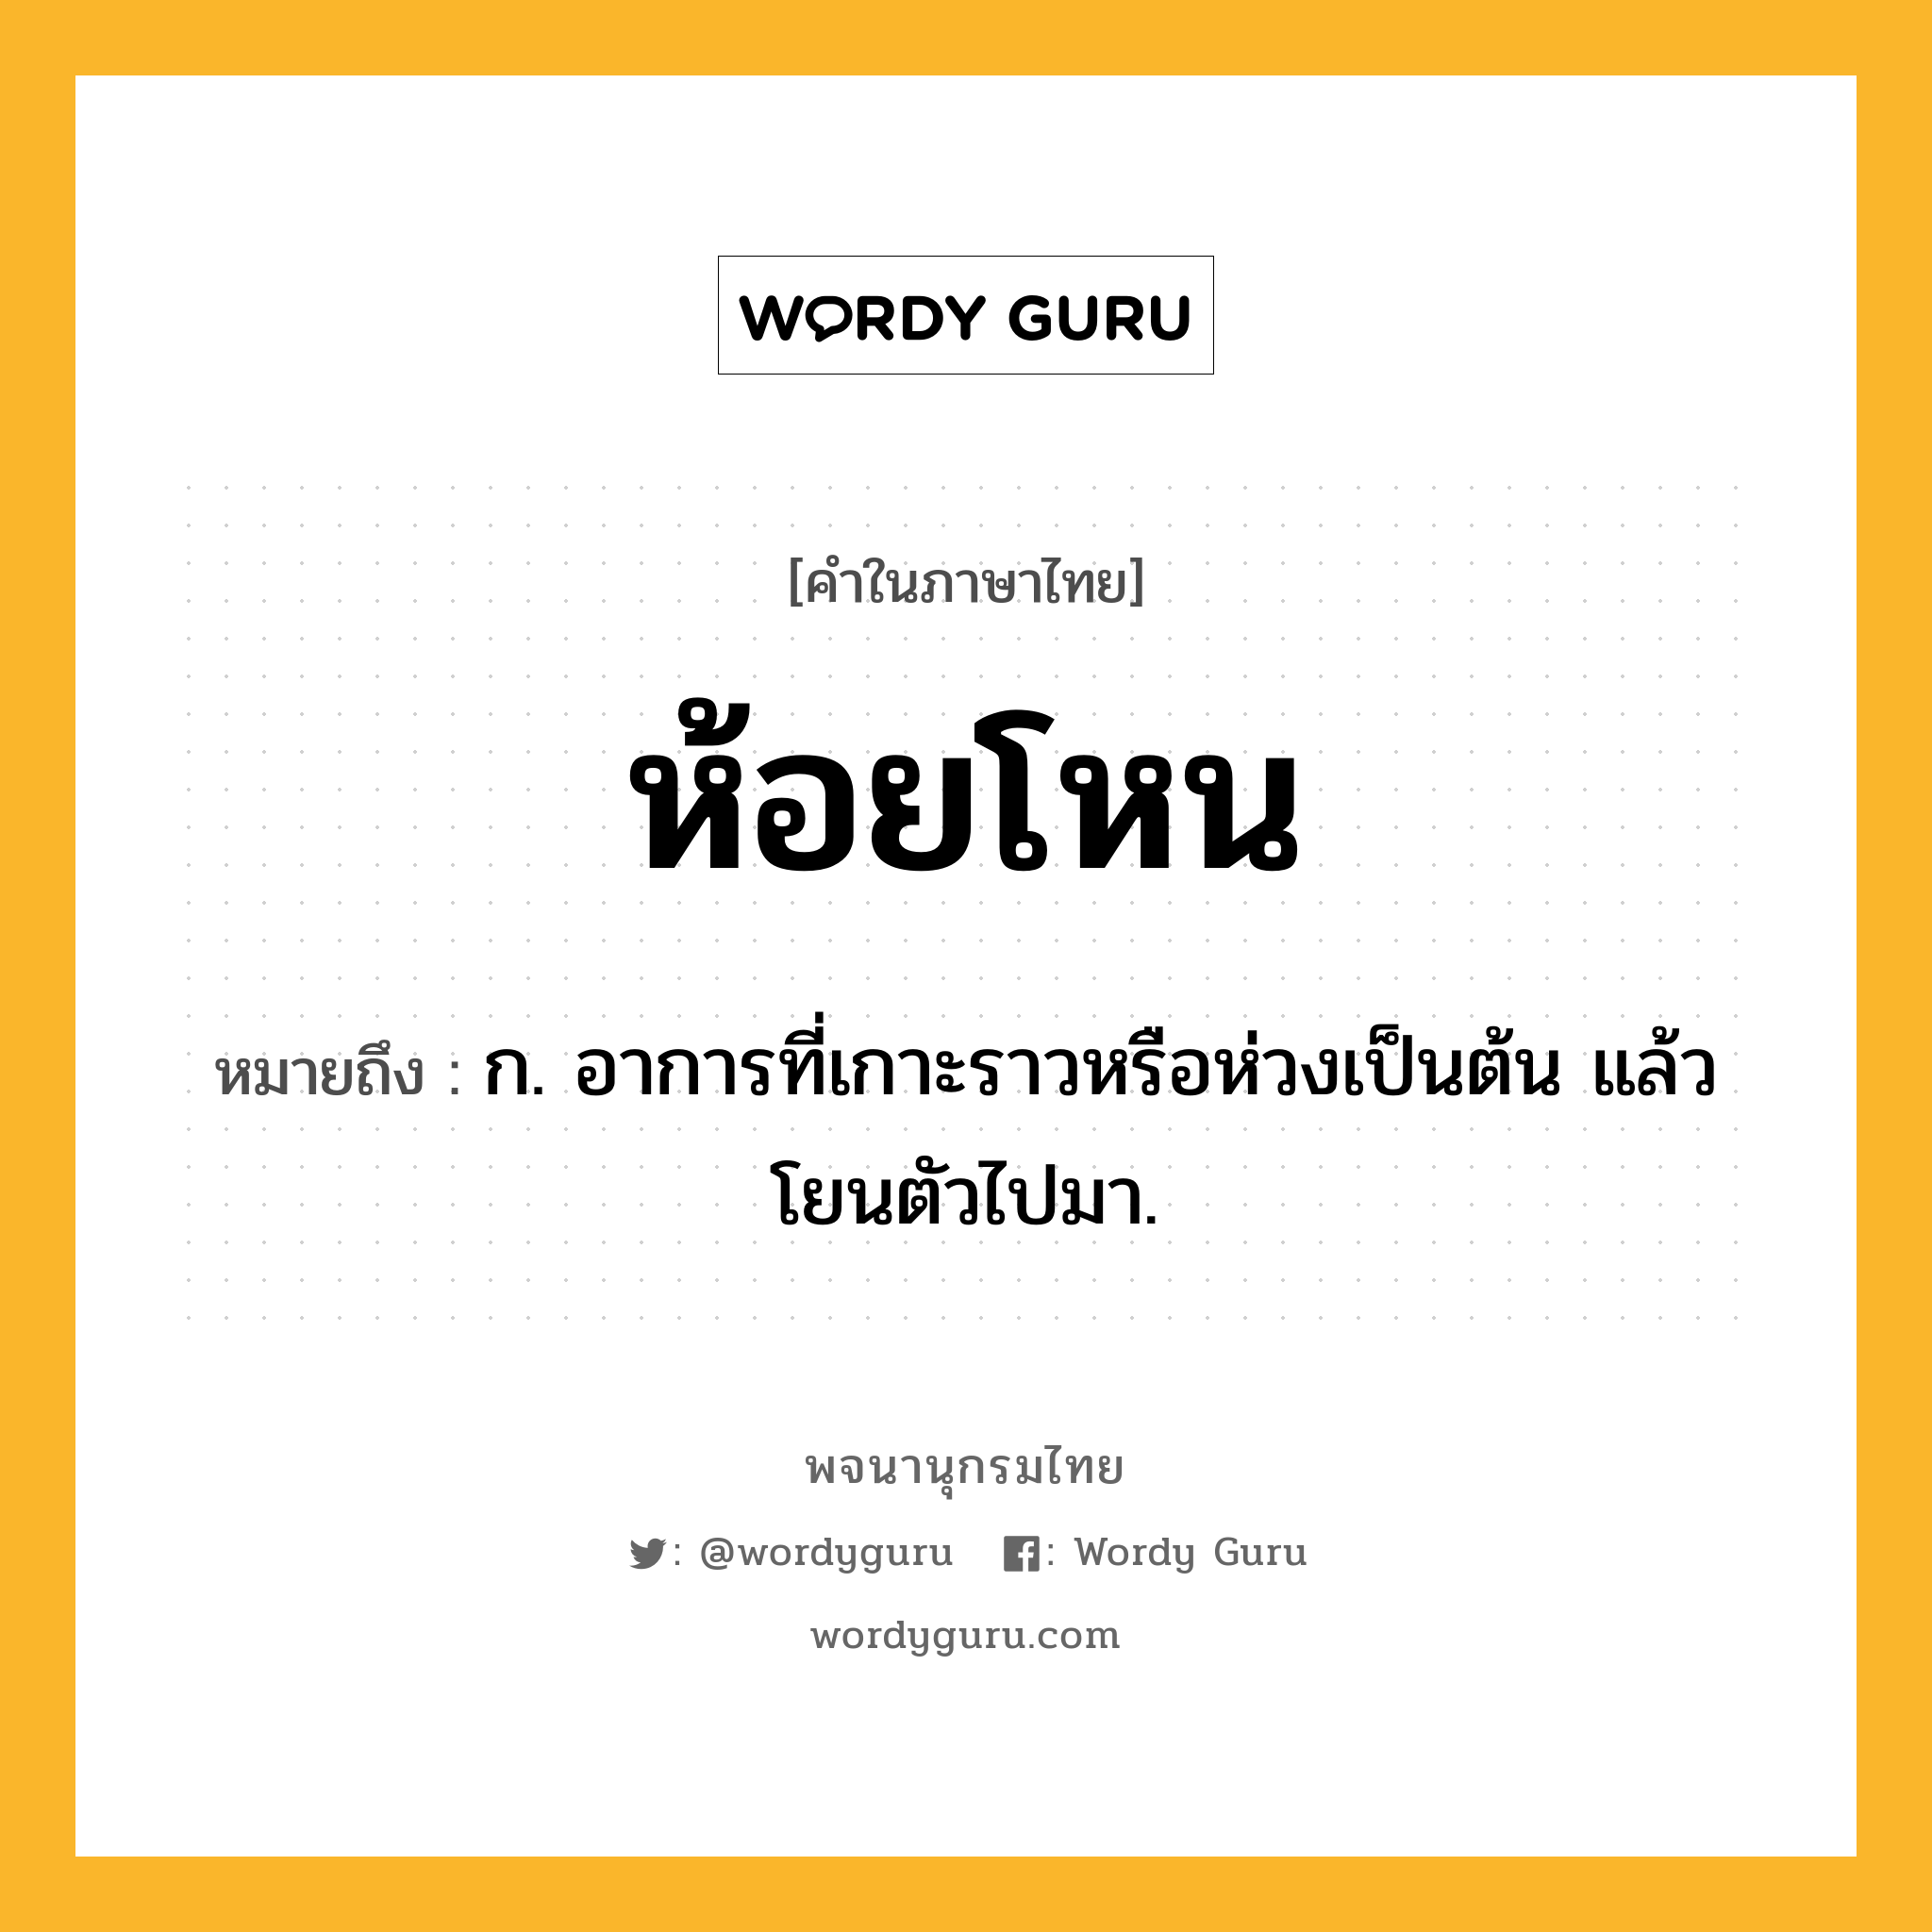 ห้อยโหน ความหมาย หมายถึงอะไร?, คำในภาษาไทย ห้อยโหน หมายถึง ก. อาการที่เกาะราวหรือห่วงเป็นต้น แล้วโยนตัวไปมา.